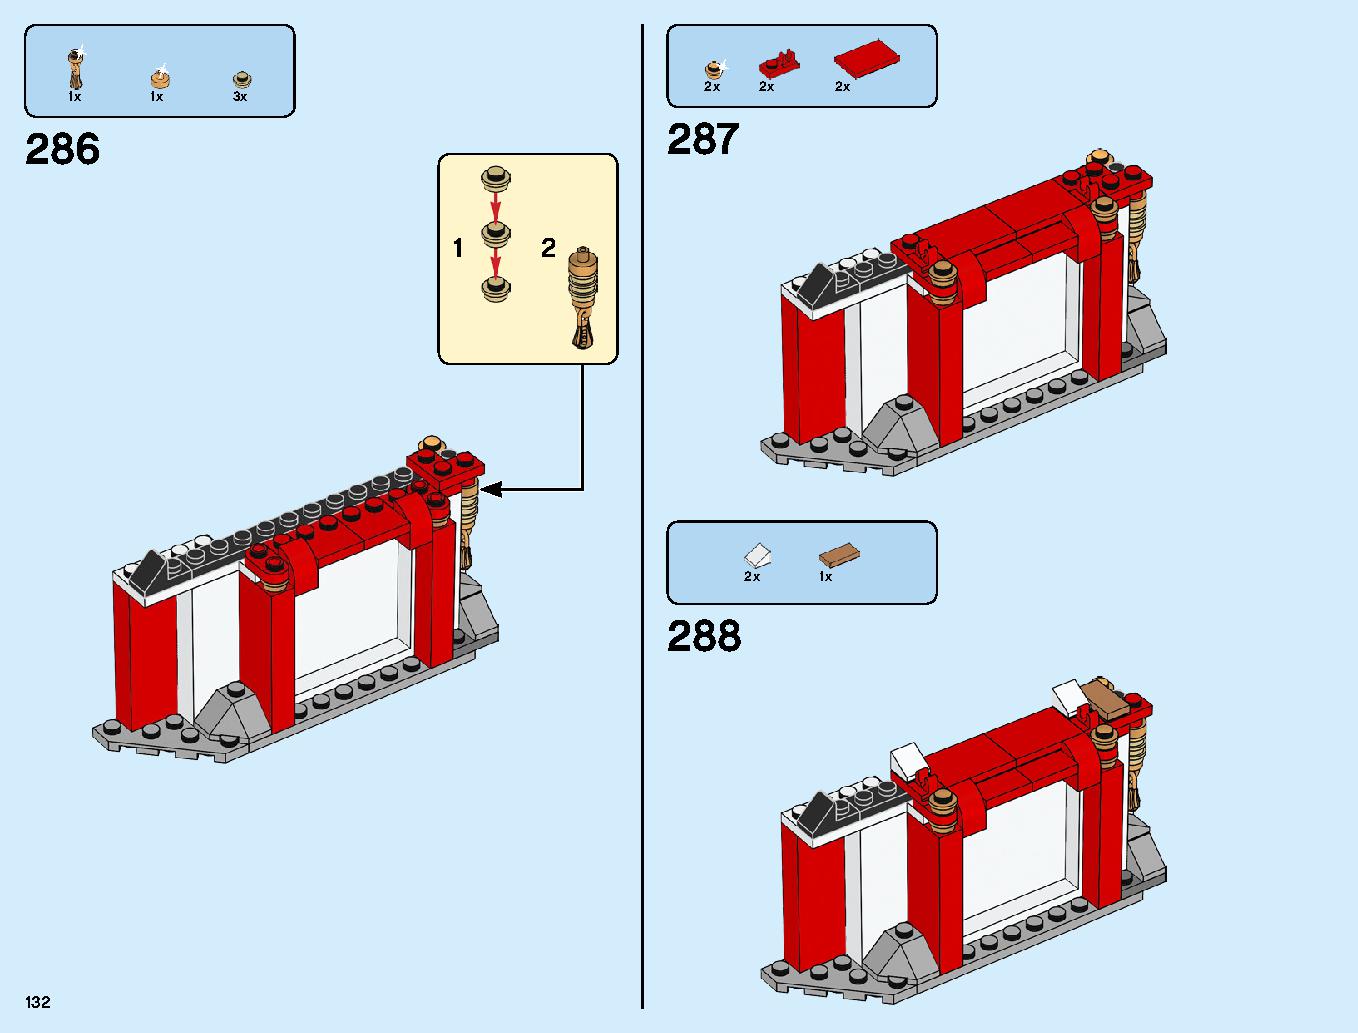 ニンジャ道場 70670 レゴの商品情報 レゴの説明書・組立方法 132 page